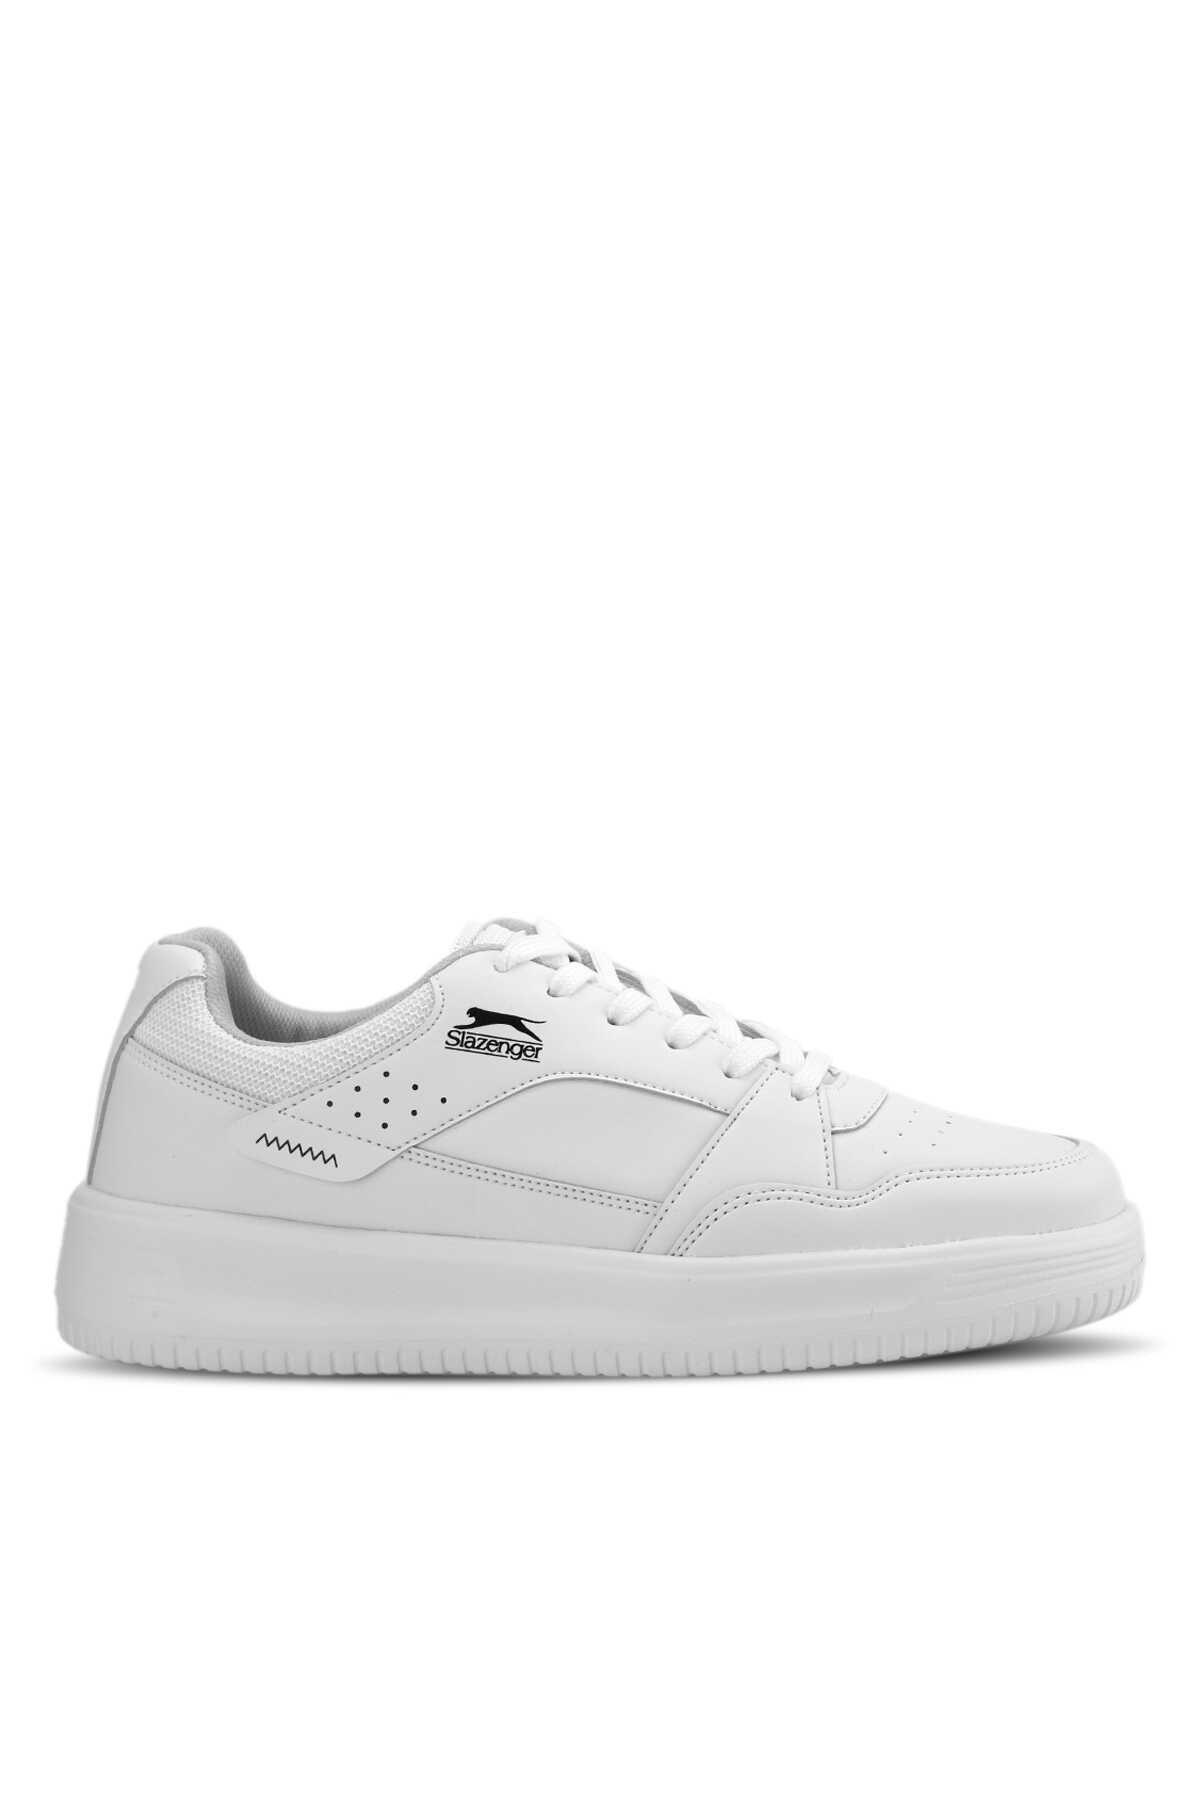 Slazenger - Slazenger LEVSKI Sneaker Erkek Ayakkabı Beyaz